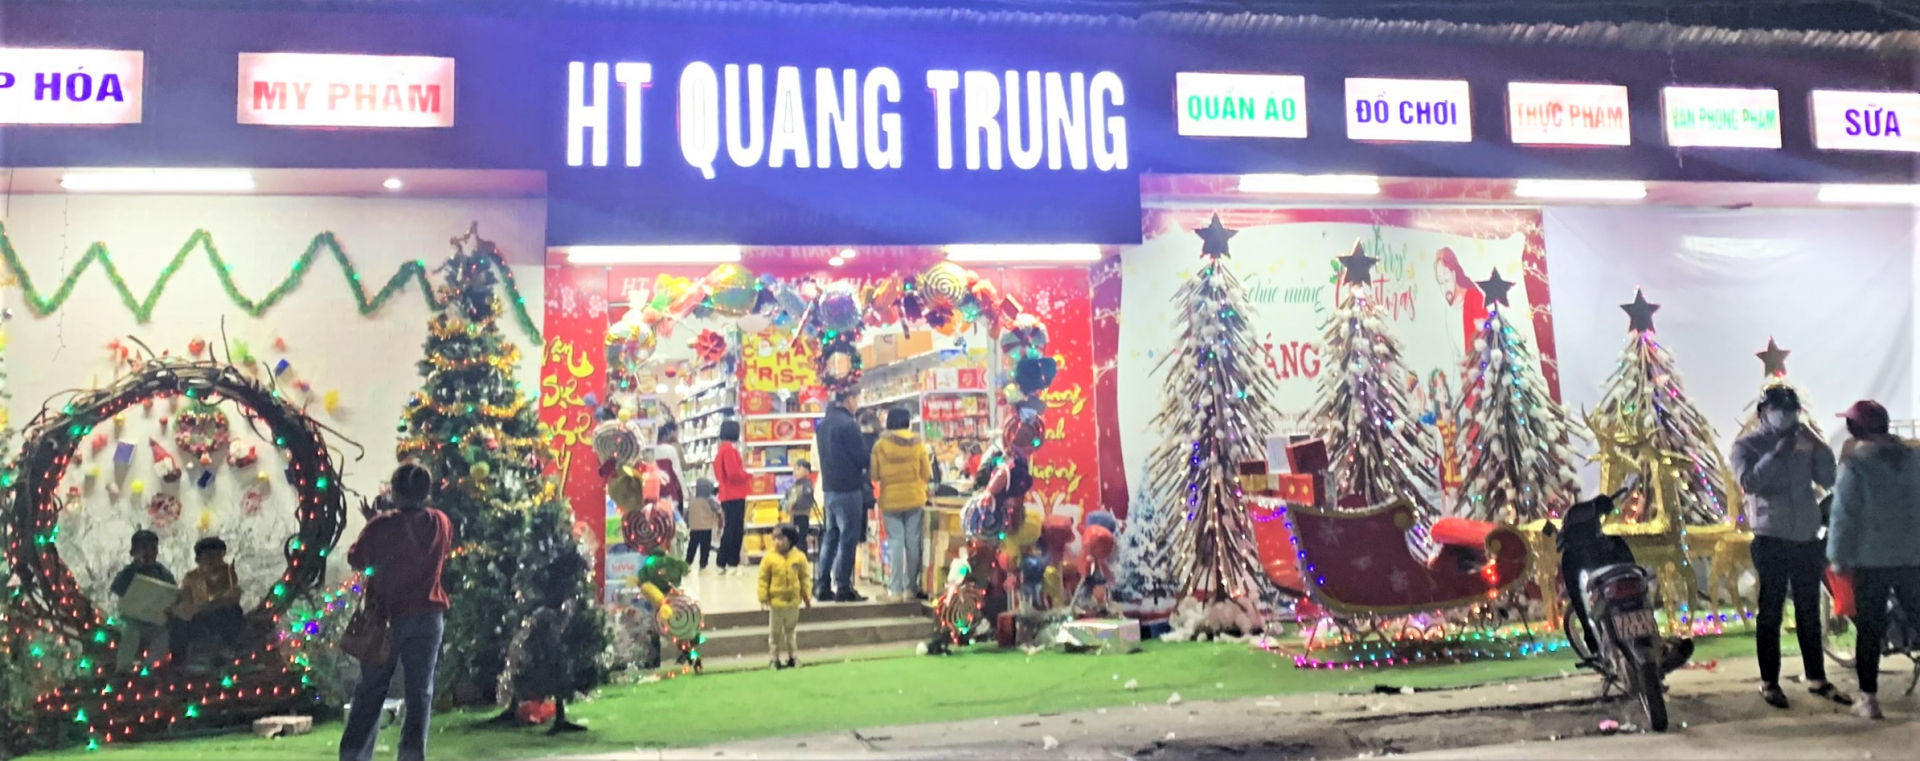 Theo ghi nhận của PV, vào khoảng 22h30 siêu thị HT Quang Trung vẫn còn đông lượng khách đến chơi và chụp ảnh dịp Giáng sinh